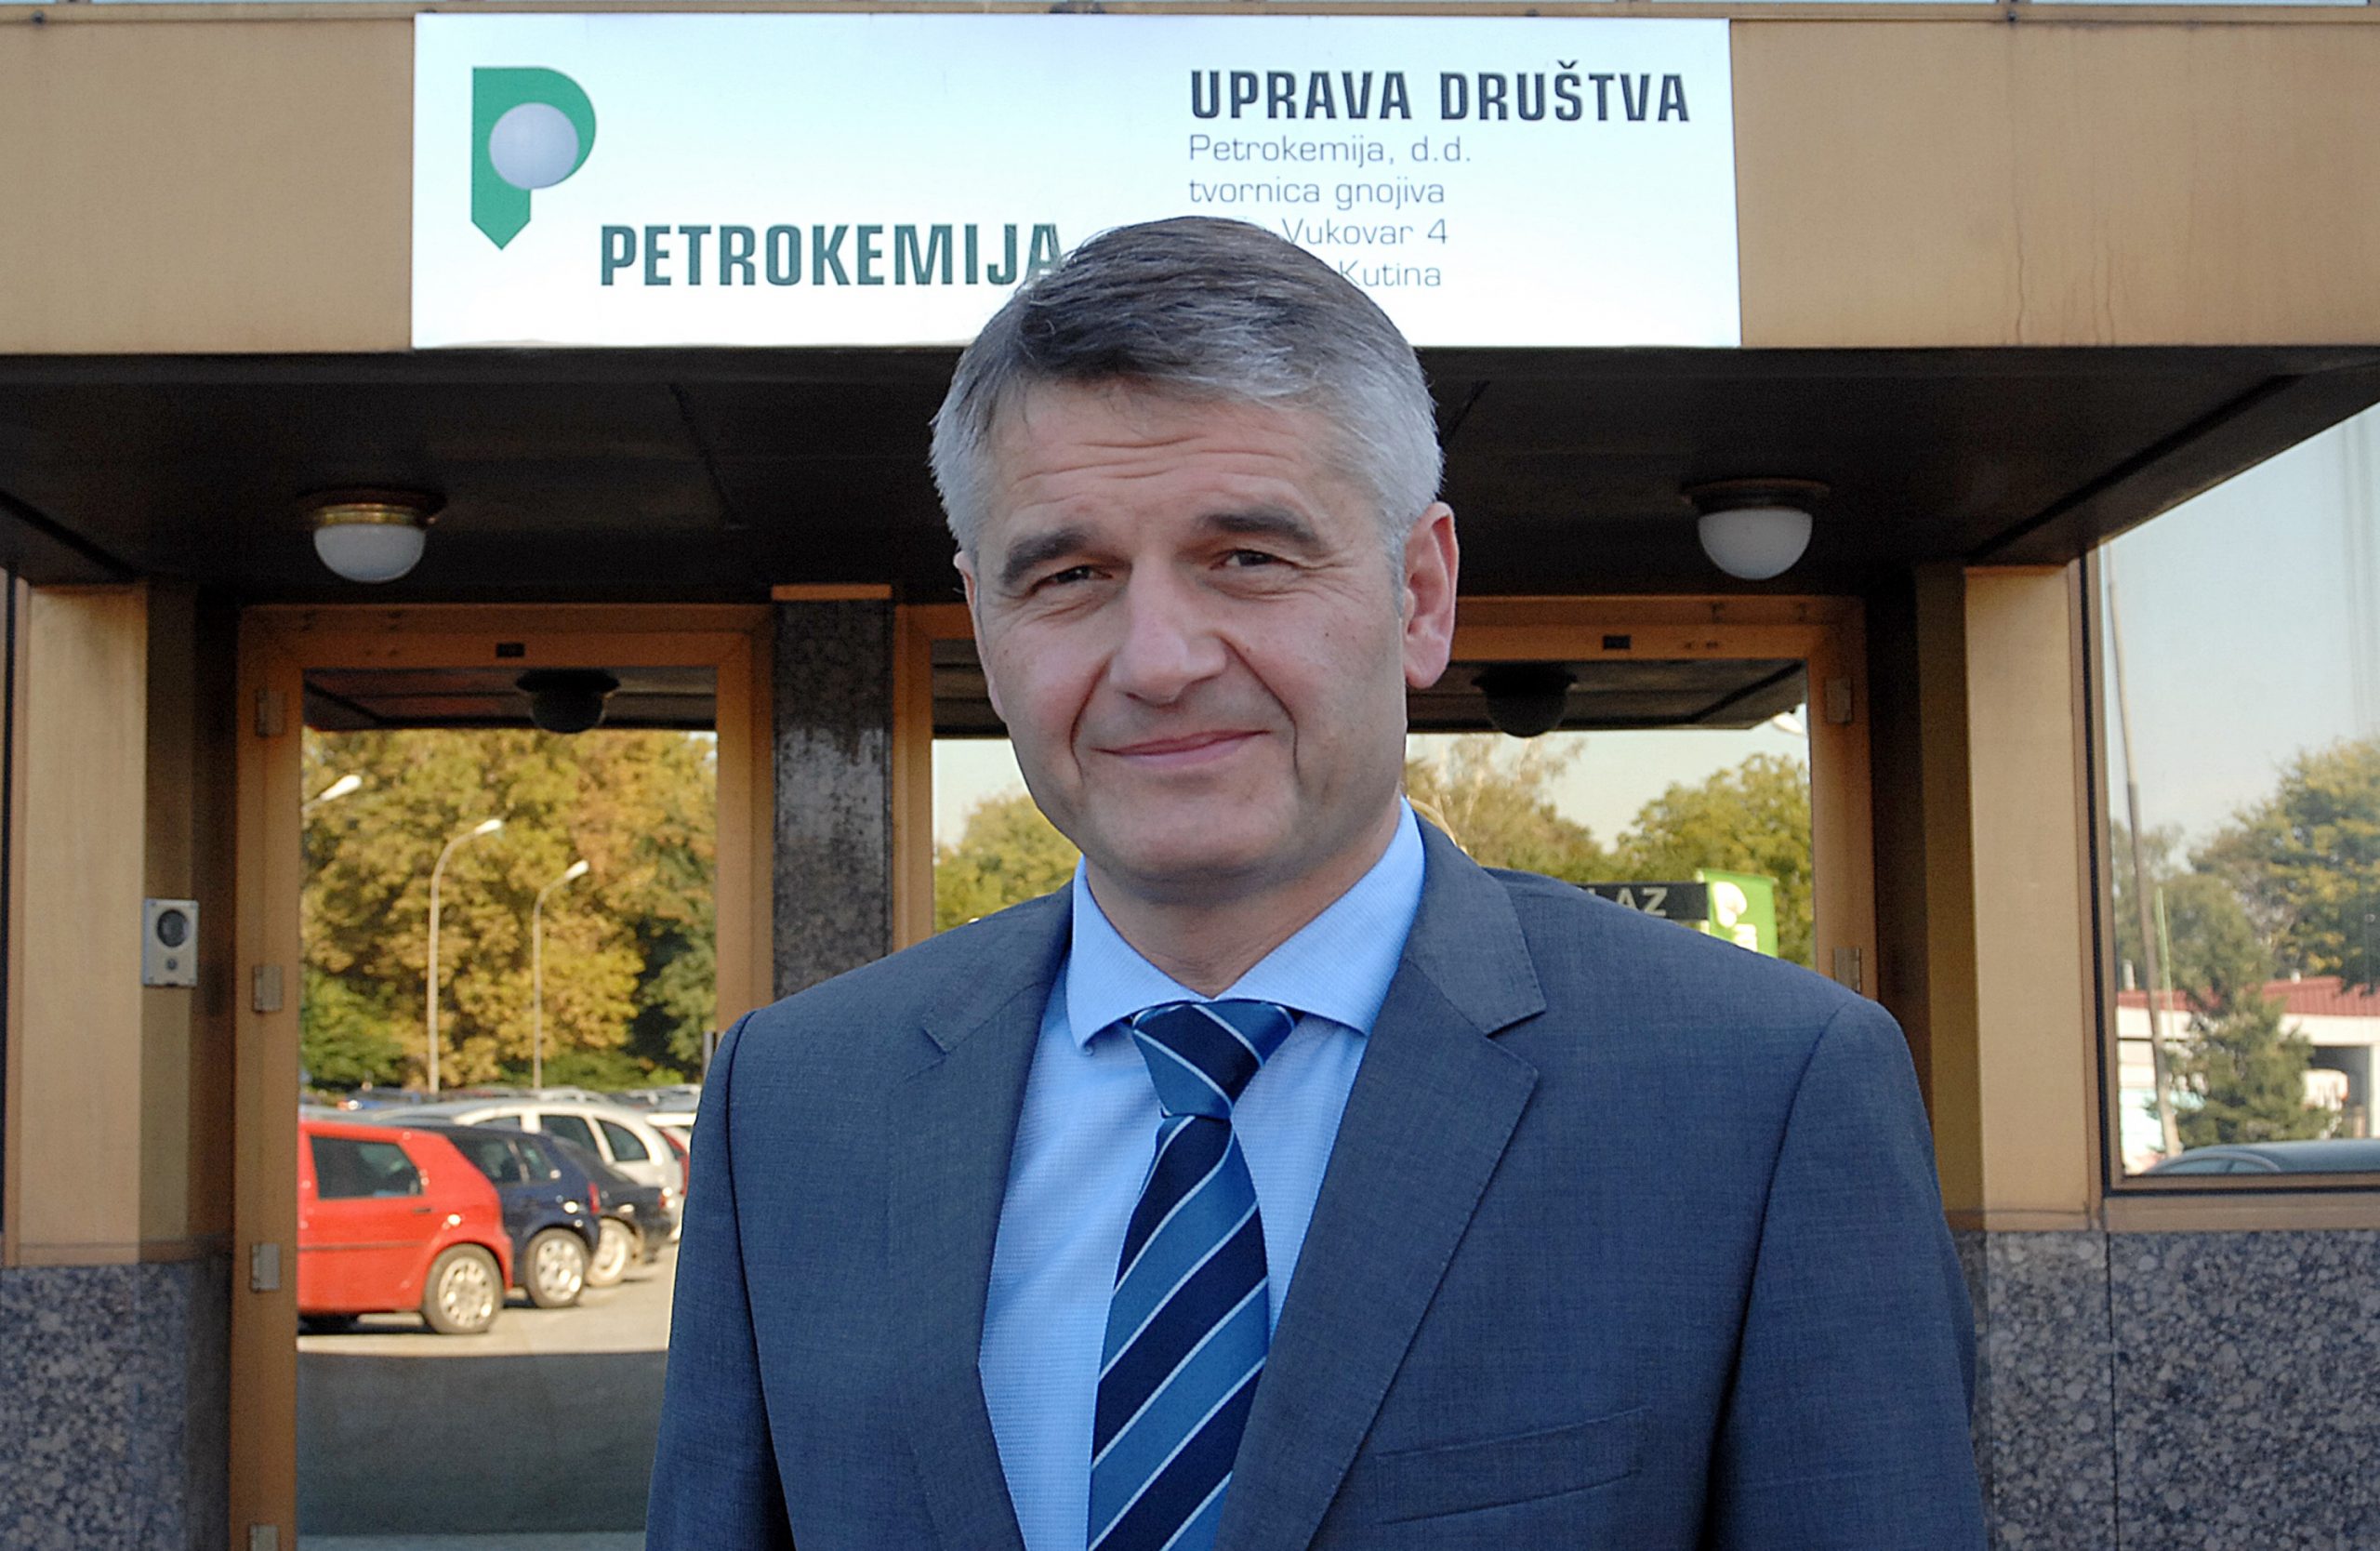 04.10.2013., Kutina - Dragan Marcinko, predsjednik Uprave Petrokemije d.d.
Photo: Nikola Cutuk/PIXSELL